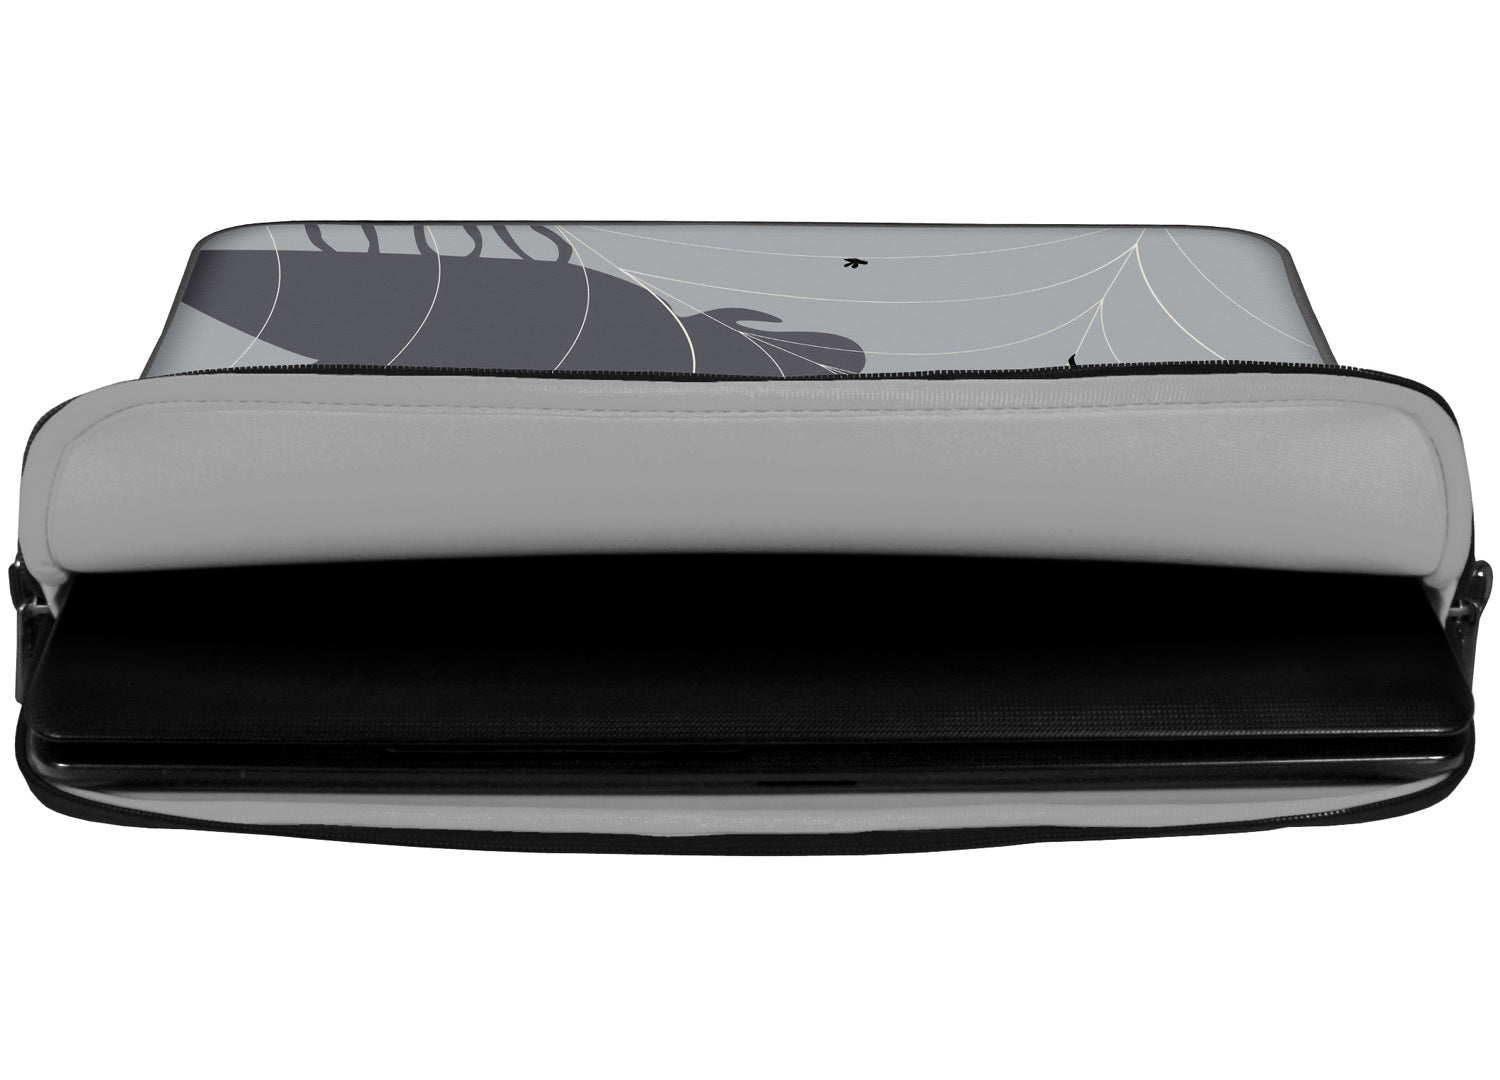 Innenansicht mit Schutzlippen der LS146 Spiderweb Designer Laptop Tasche in grau aus wasserabweisendem Neopren